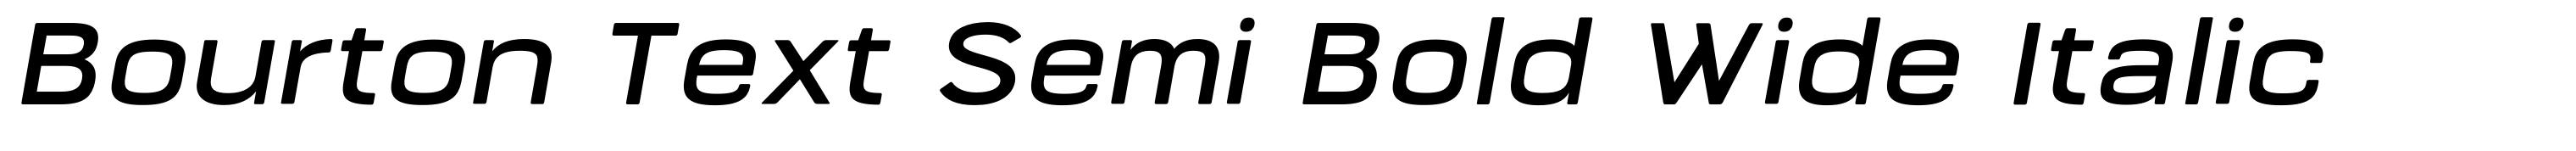 Bourton Text Semi Bold Wide Italic